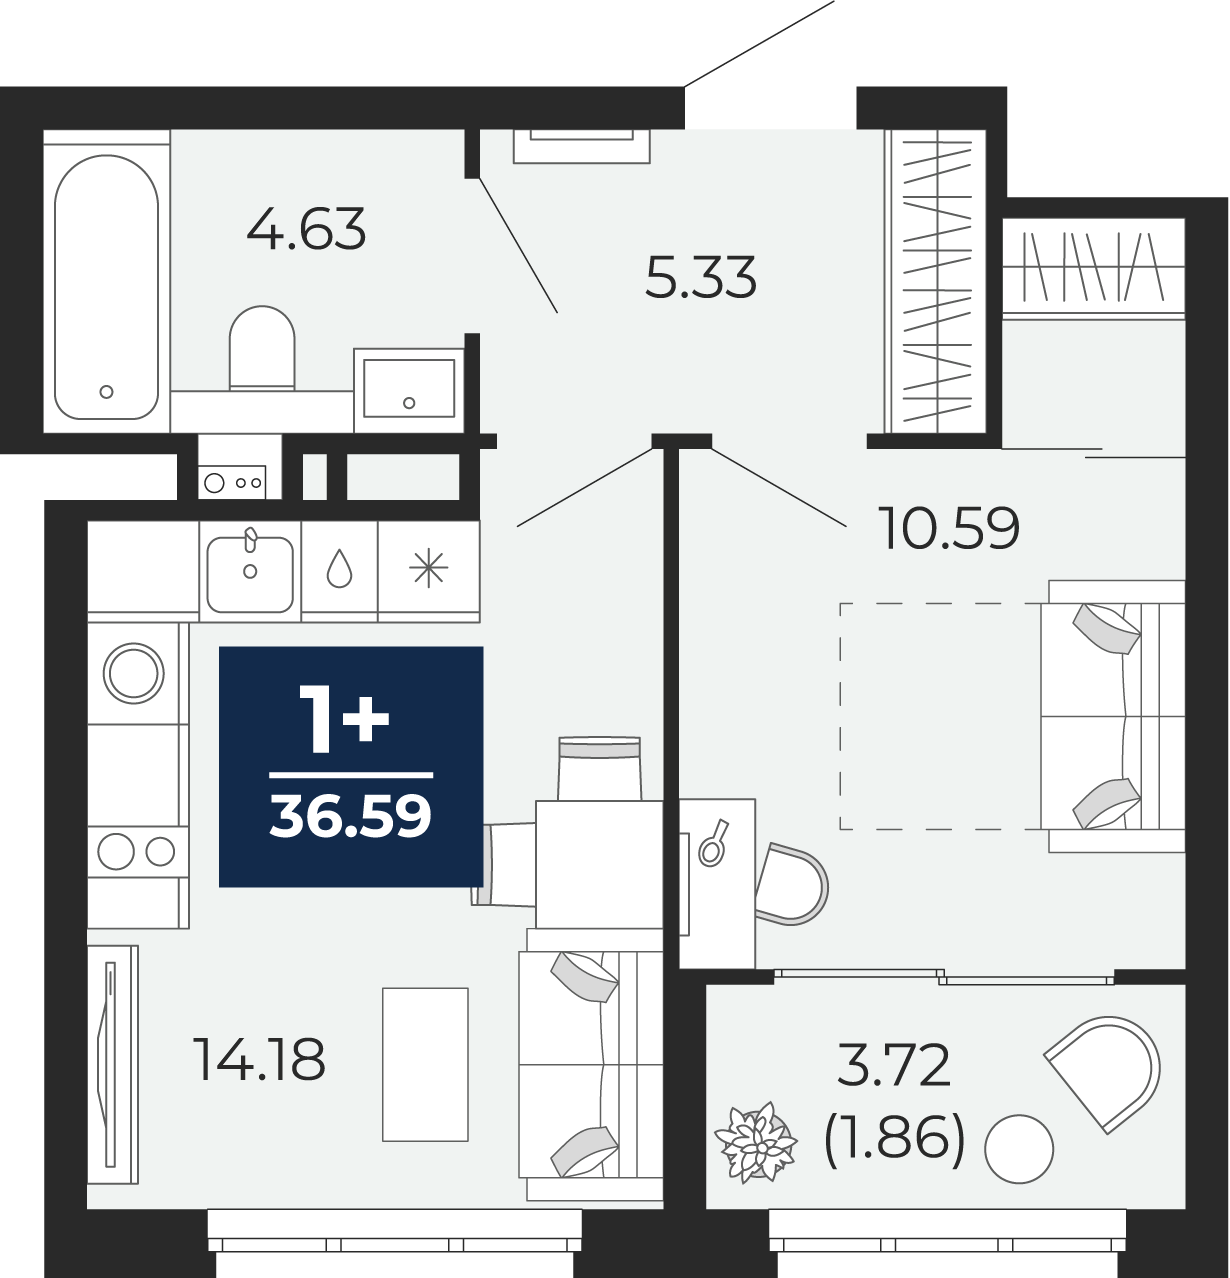 Квартира № 73, 1-комнатная, 36.59 кв. м, 7 этаж